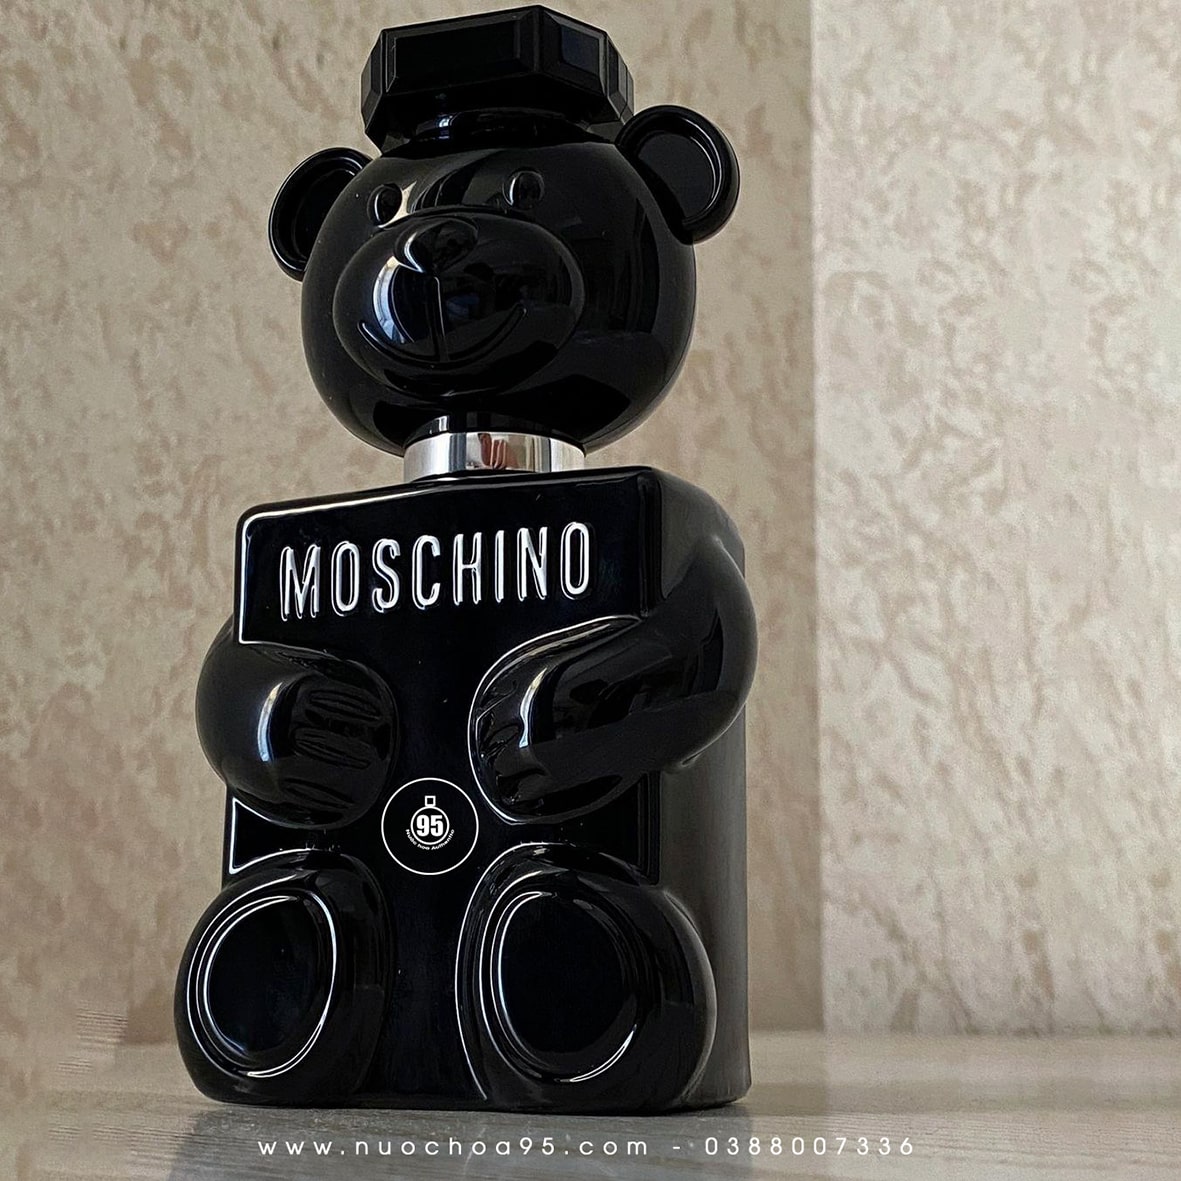 Top nước hoa Moschino hình con gấu được yêu thích nhất năm 2022 - Ảnh 4